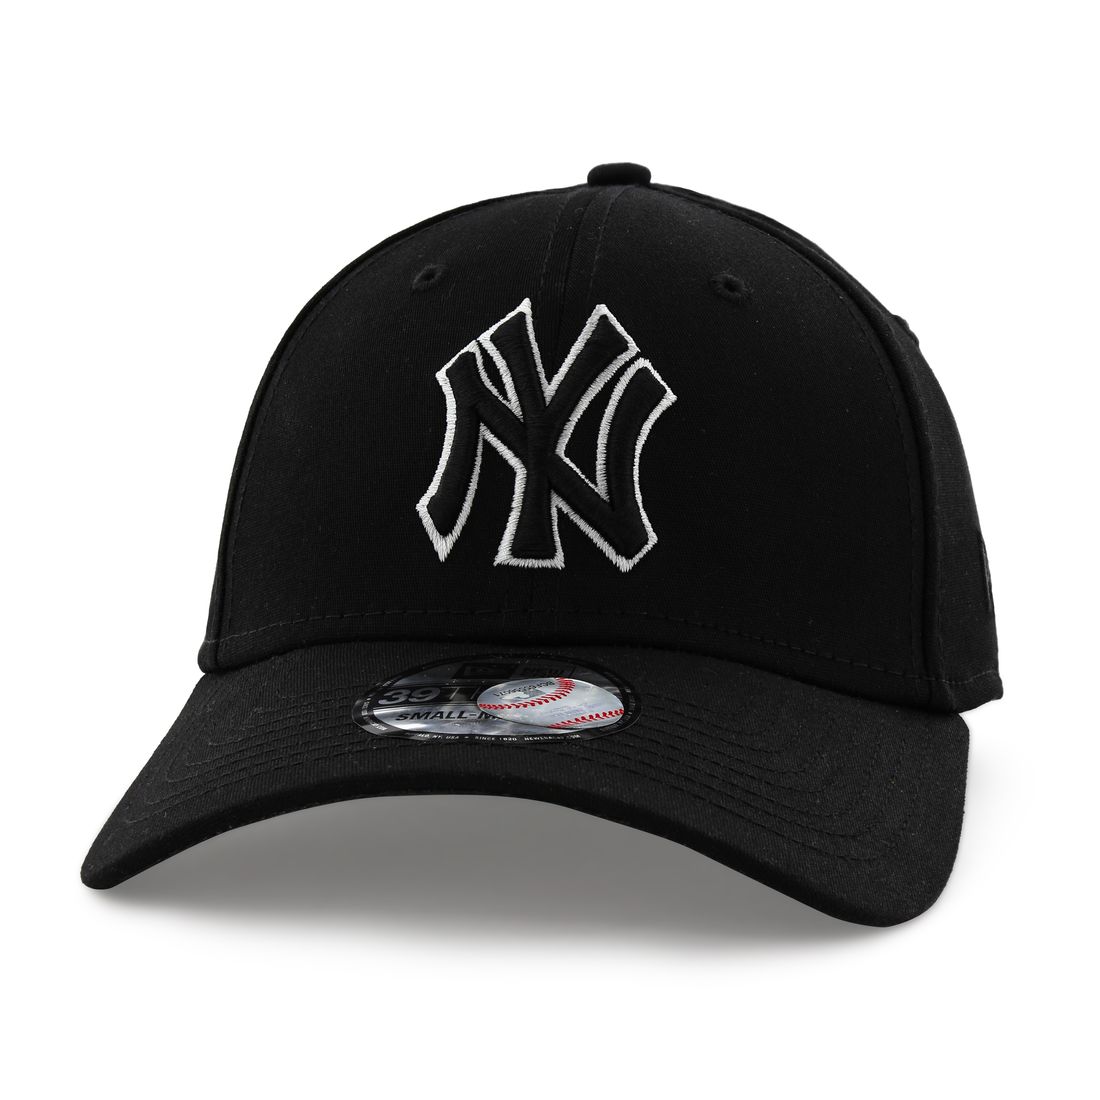 قبعة للرجال تحمل علامة لفريق يانكيز نيويورك بلون متناغم من نيو إيرا لون أسود S/M